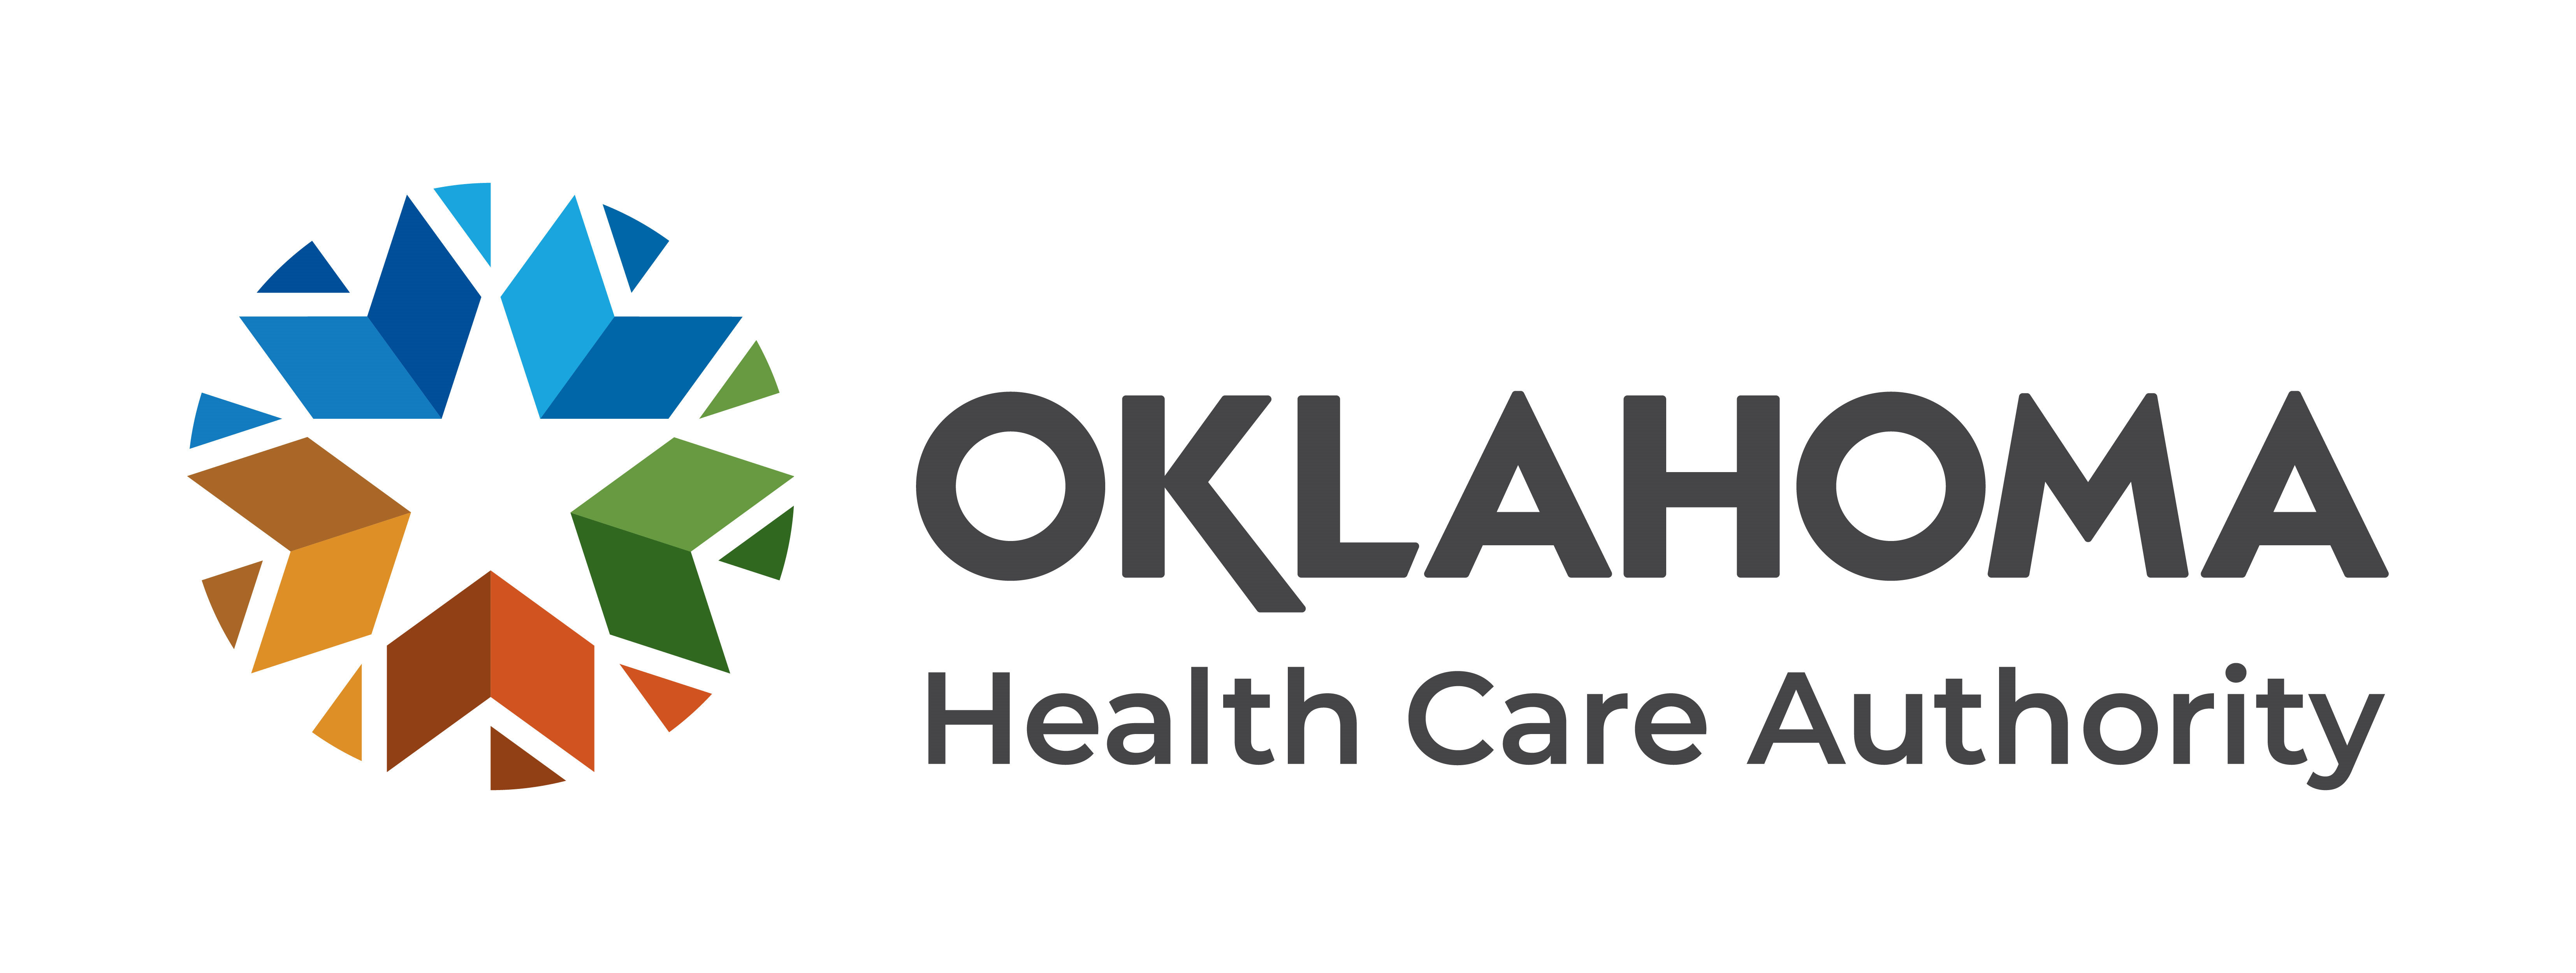 Oklahoma Health Care Authority logo